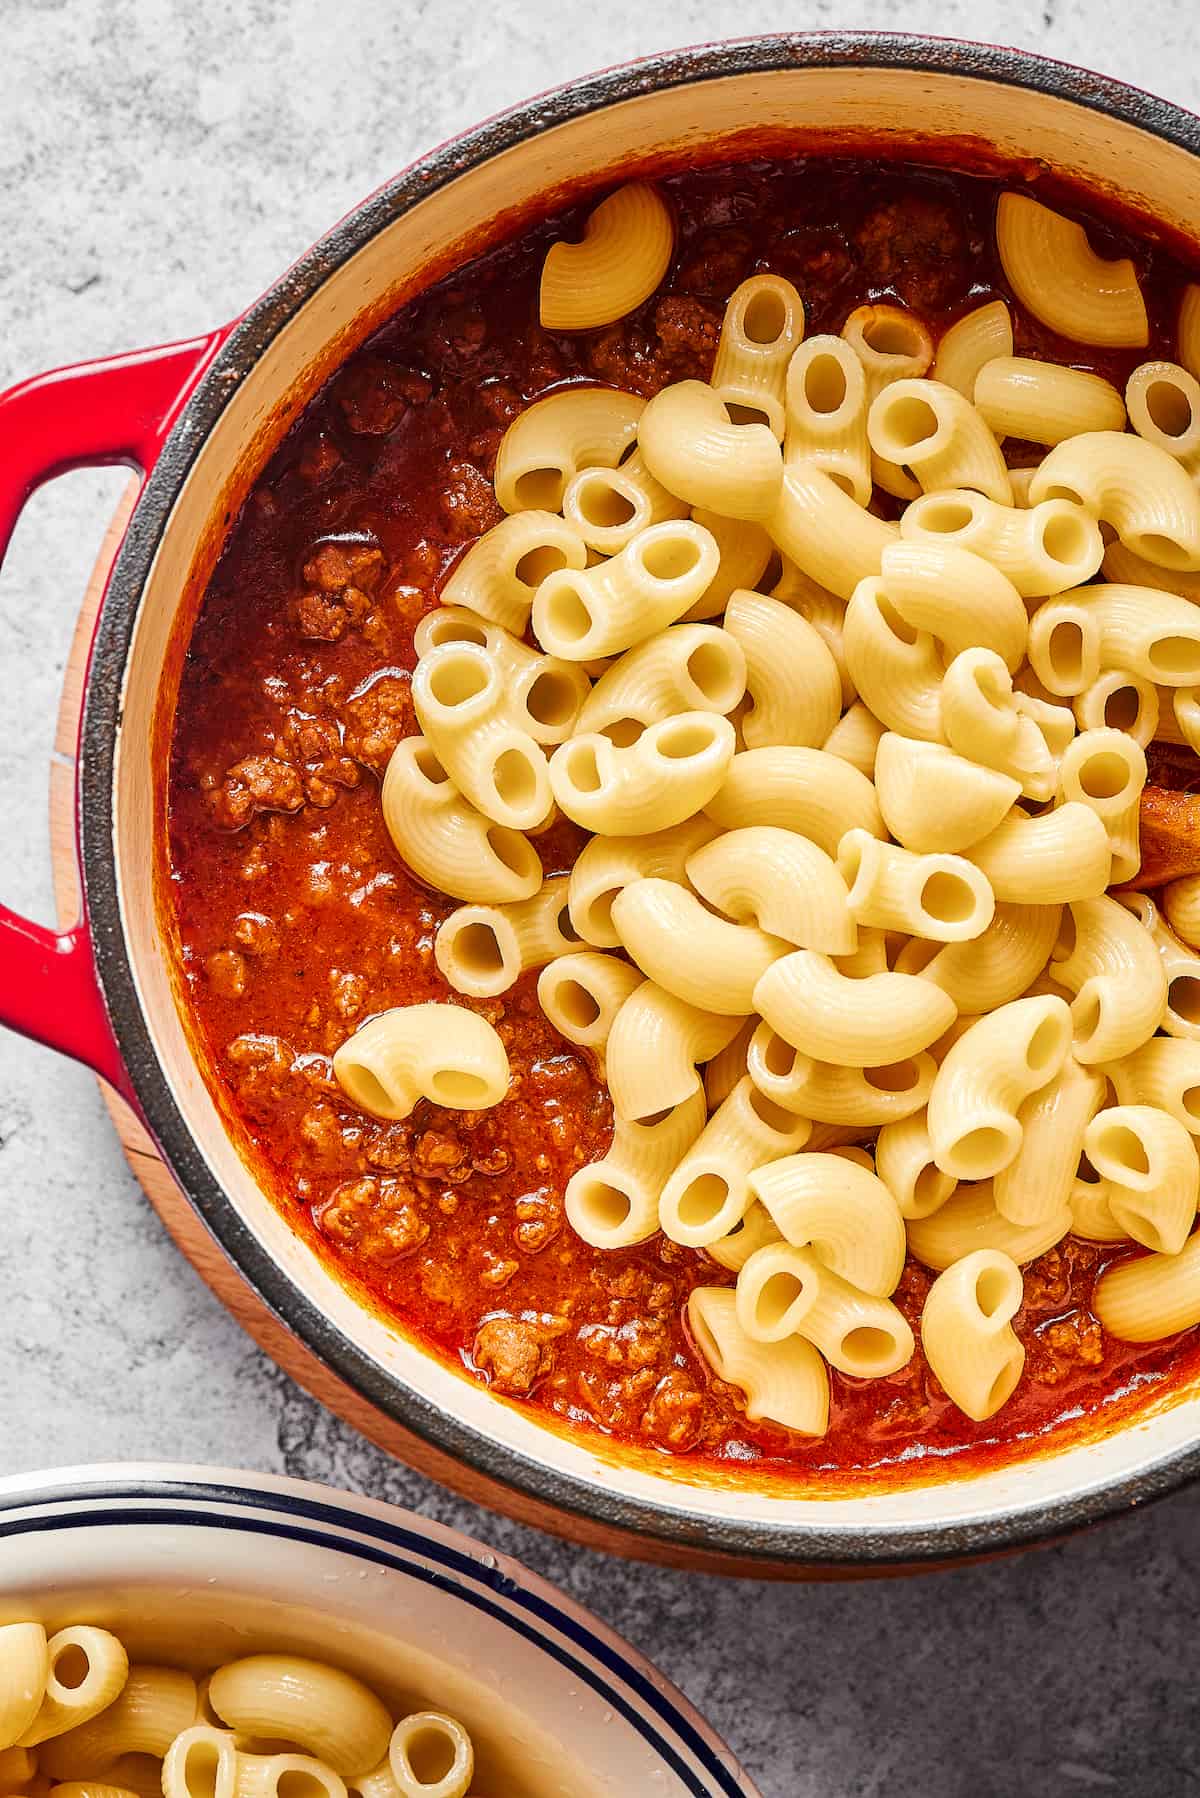 Elbow macaroni added to tomato sauce